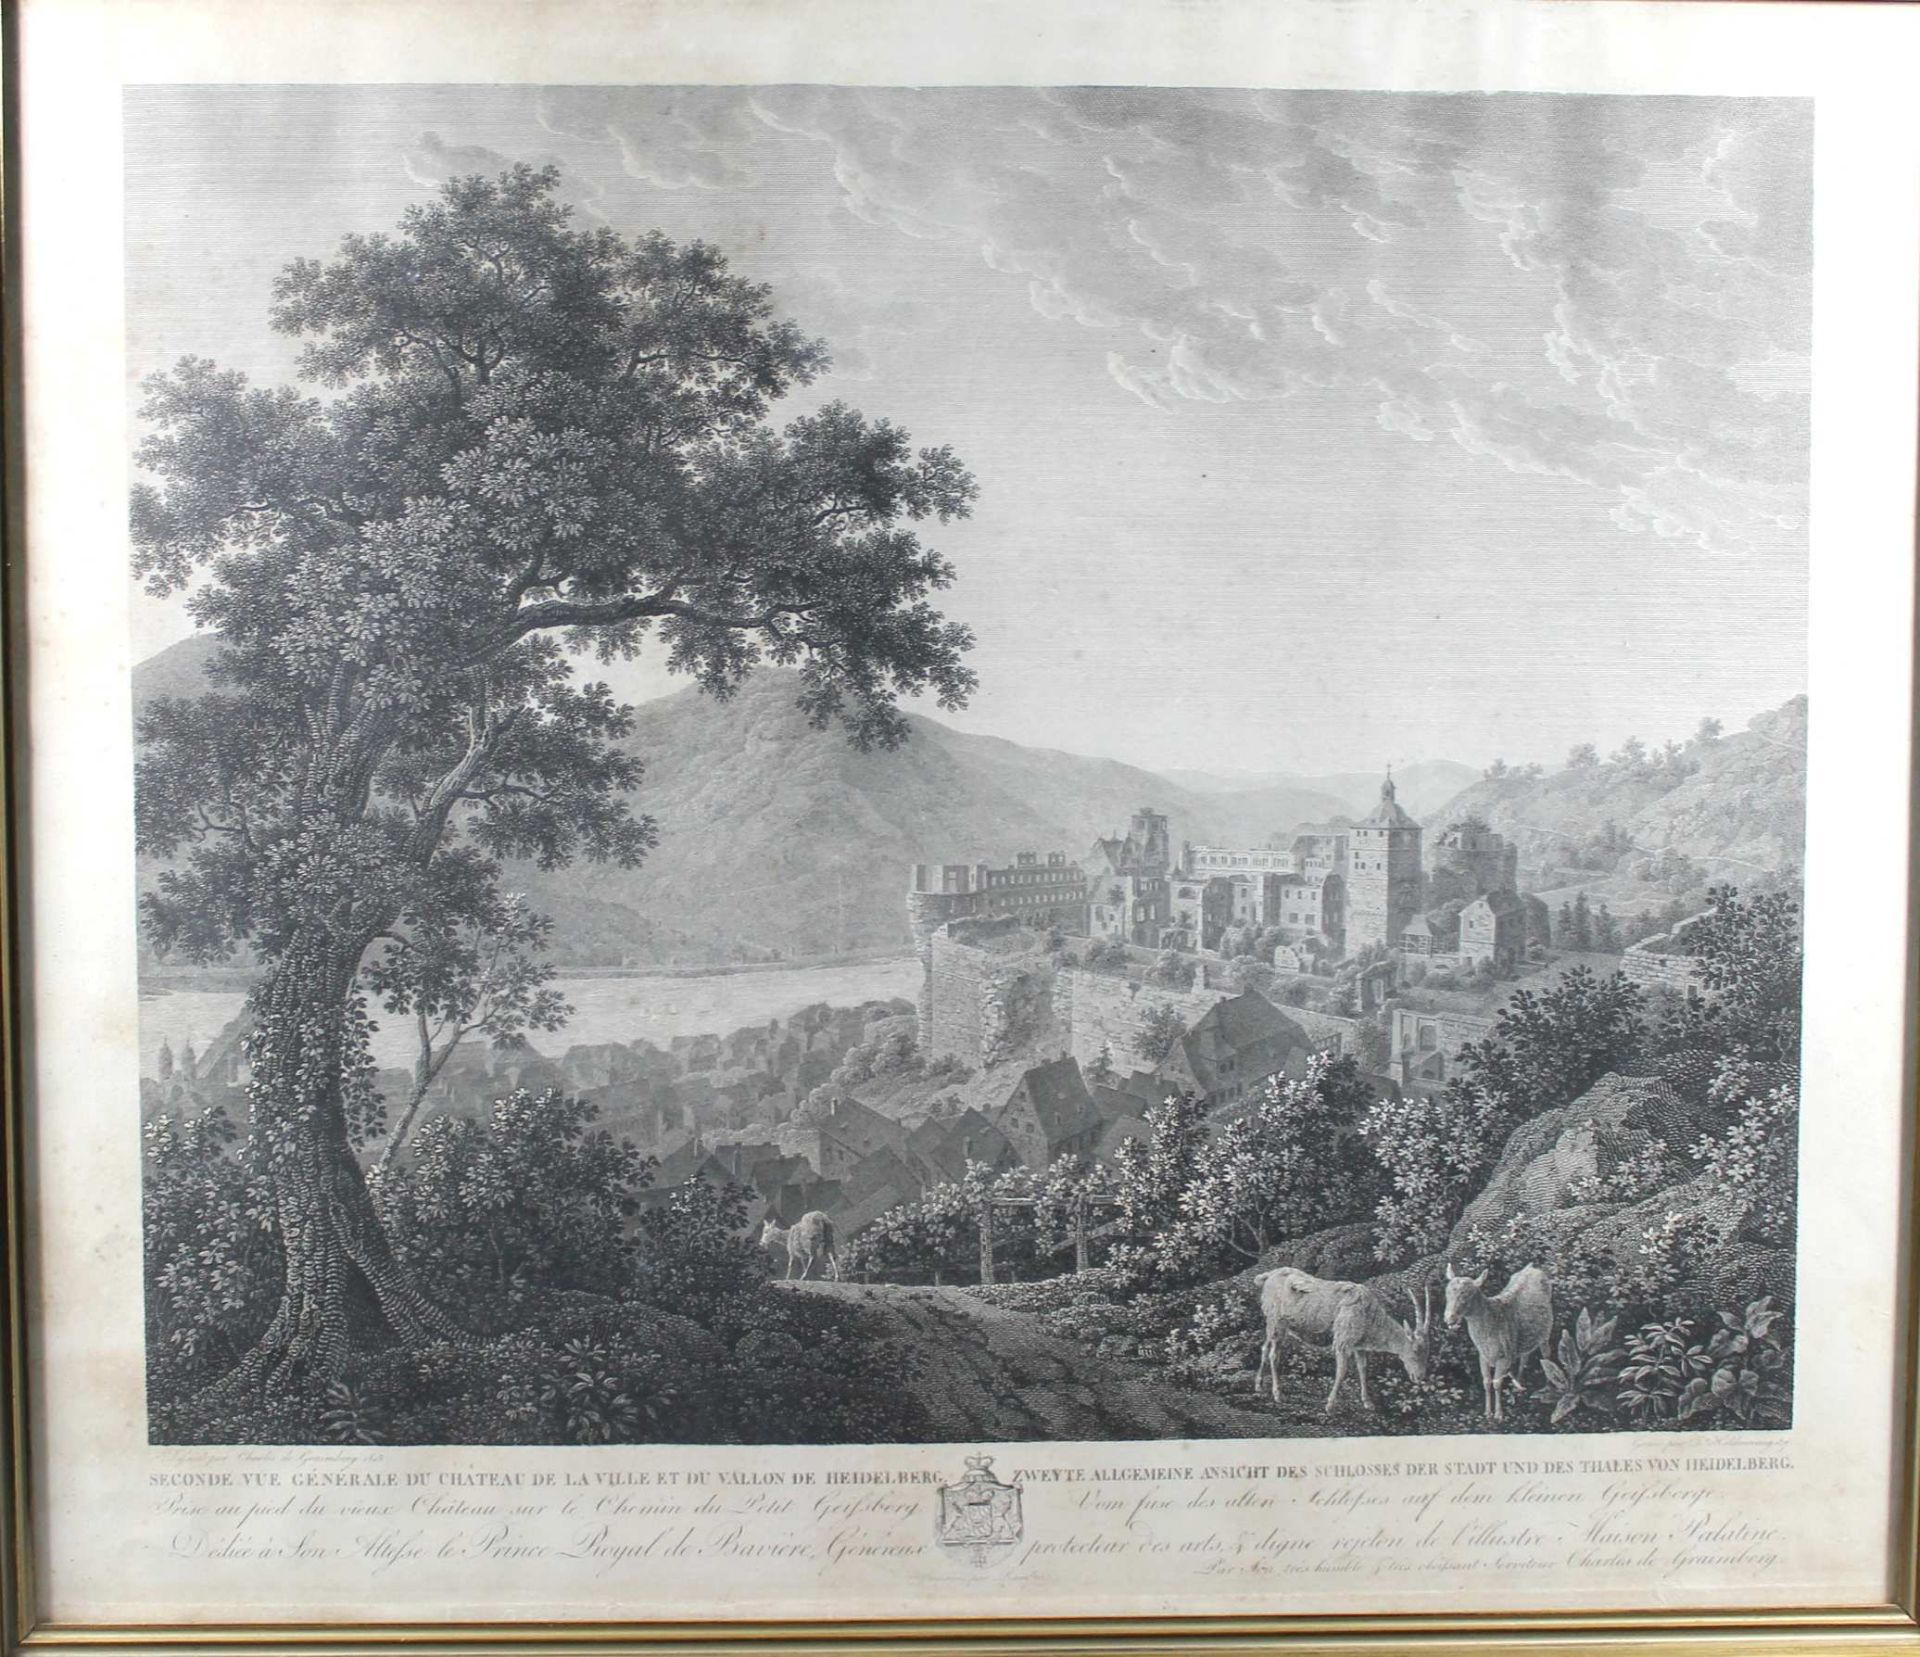 1 alter Stich s/w „Zweyte allgemeine Ansicht des Schlosses und des Thales von Heidelberg, vom Fuse